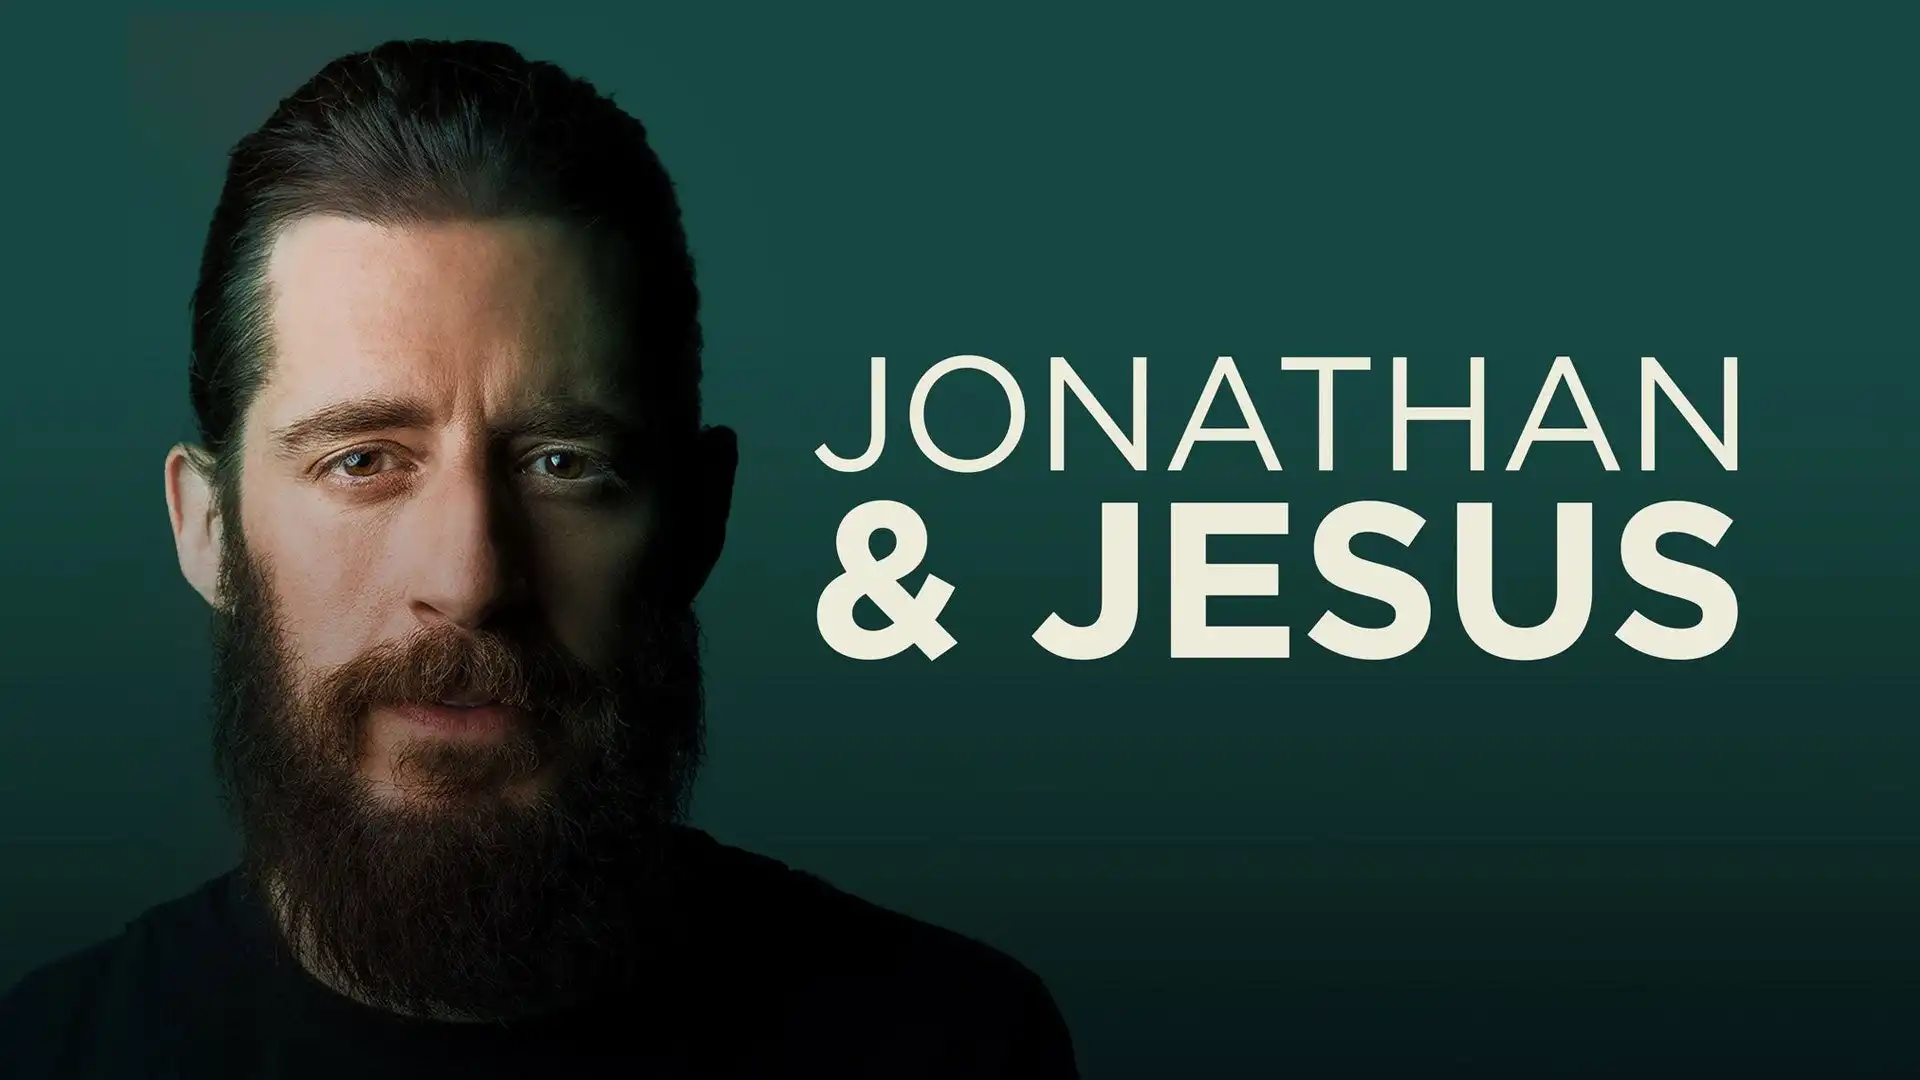 The Chosen Jonathan Roumie Explores Impact of Jesus in New Docuseries Jonathan & Jesus